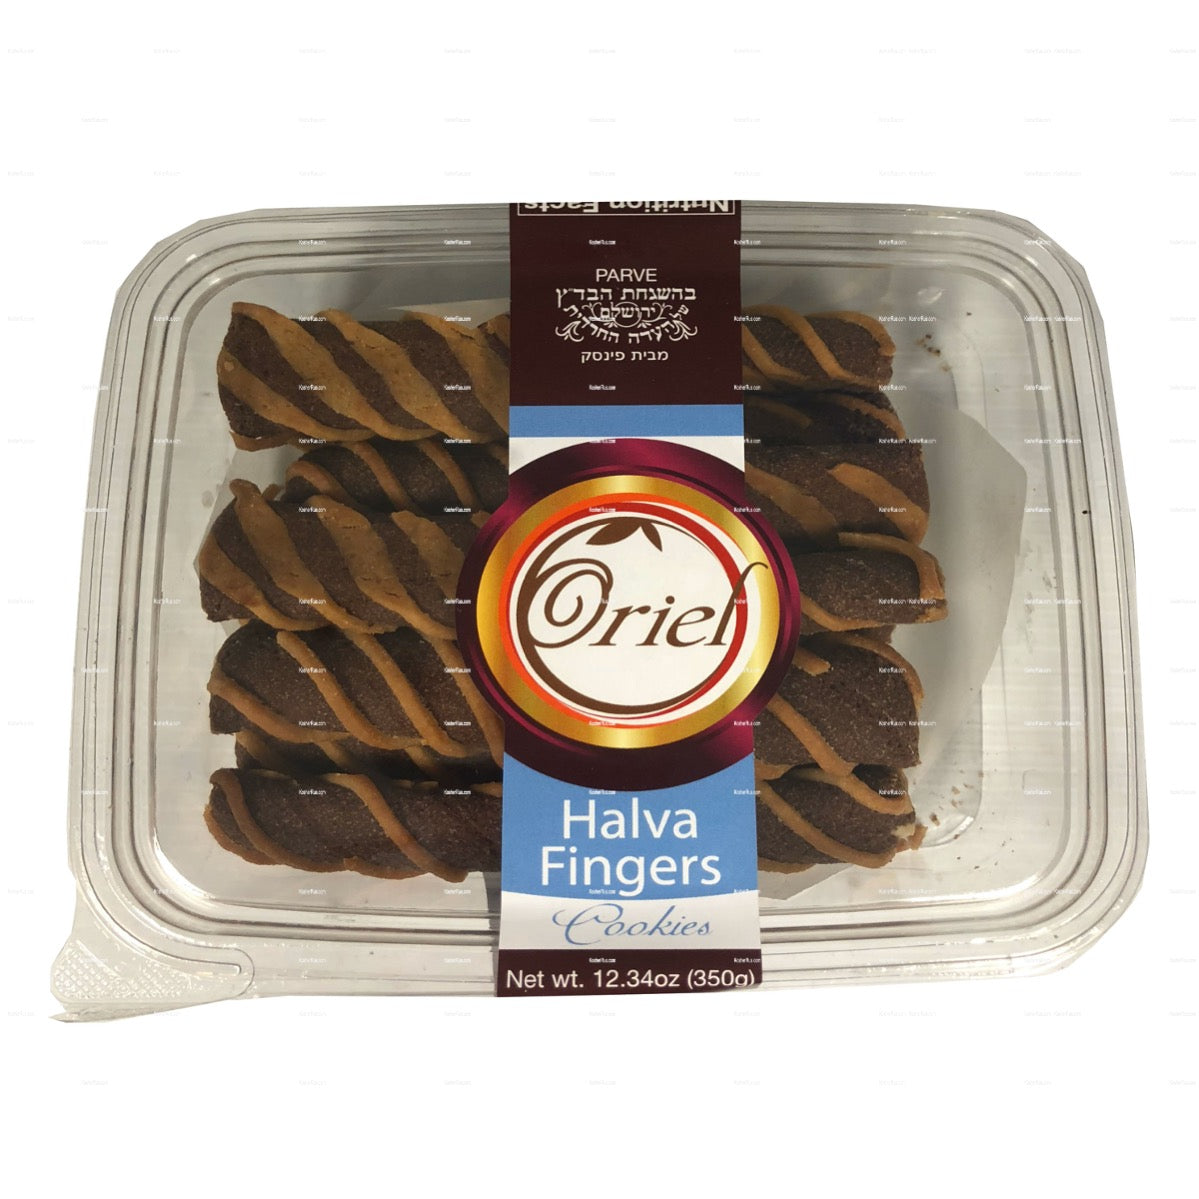 Oriel Halva Fingers Cookies 350gr